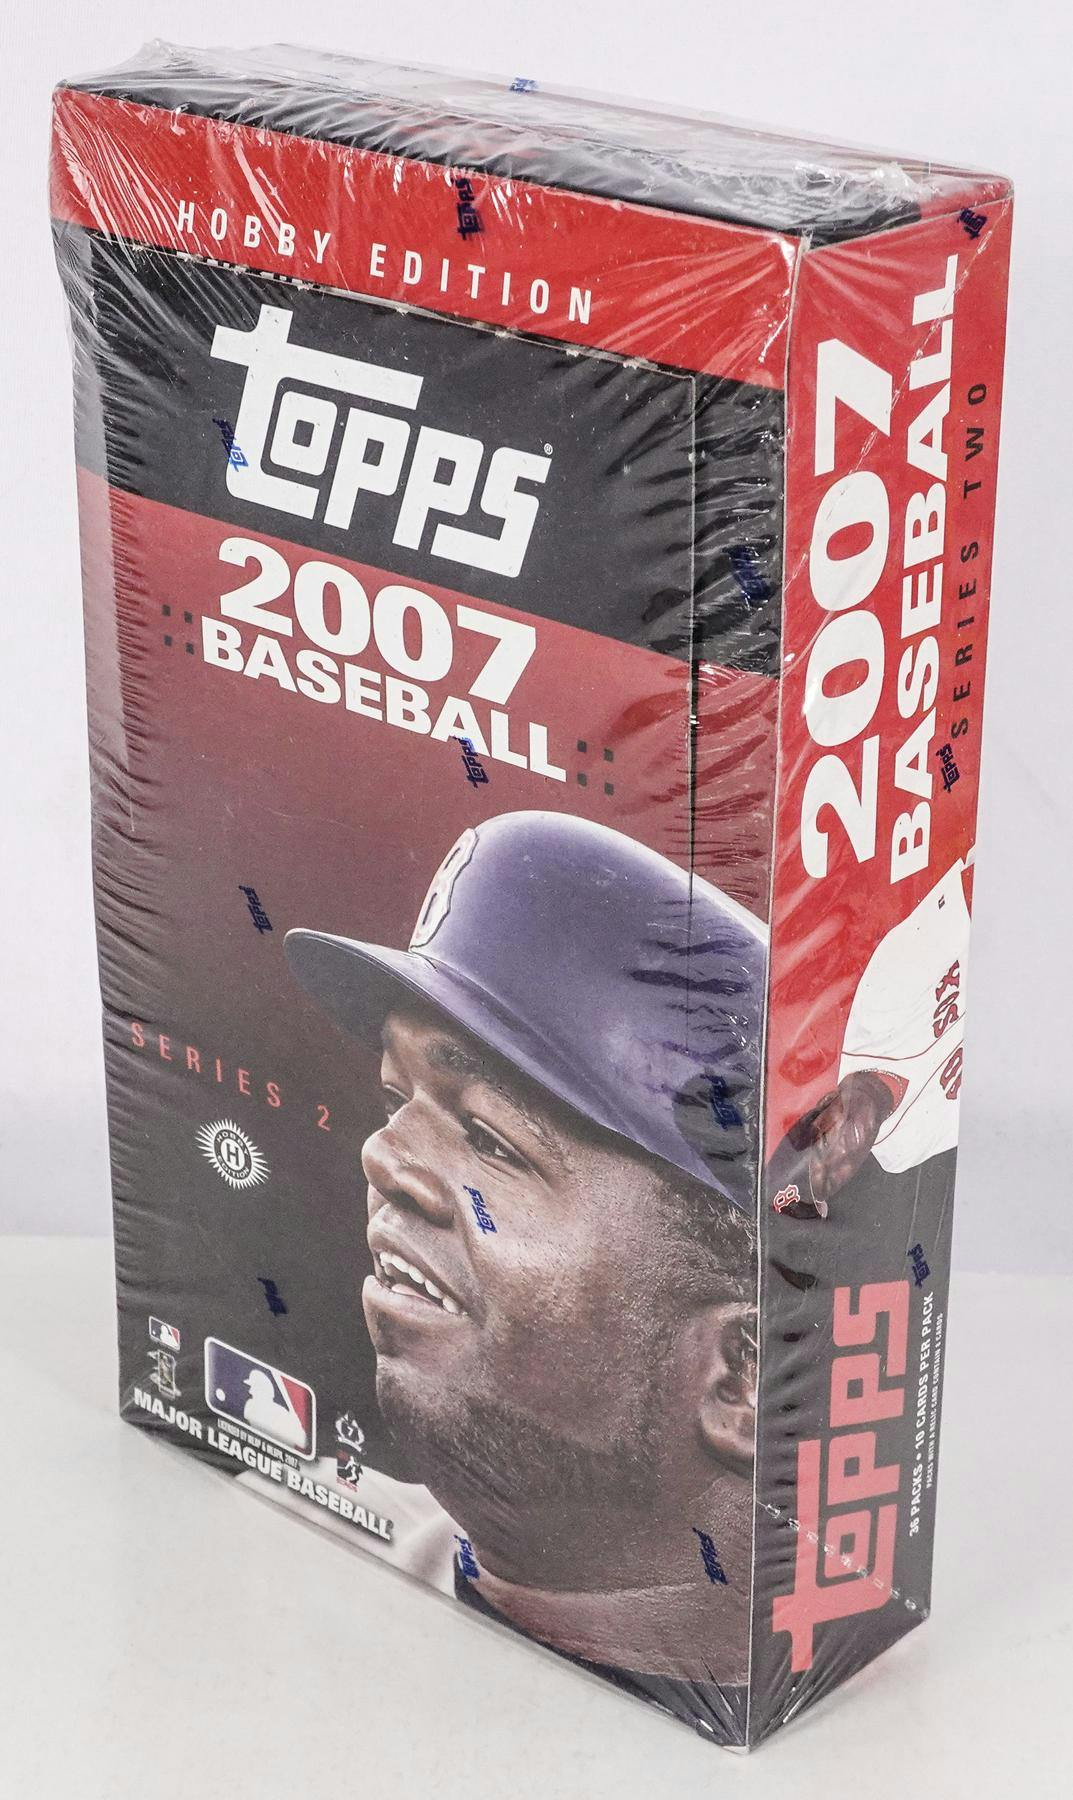 2007 topps baseball cards